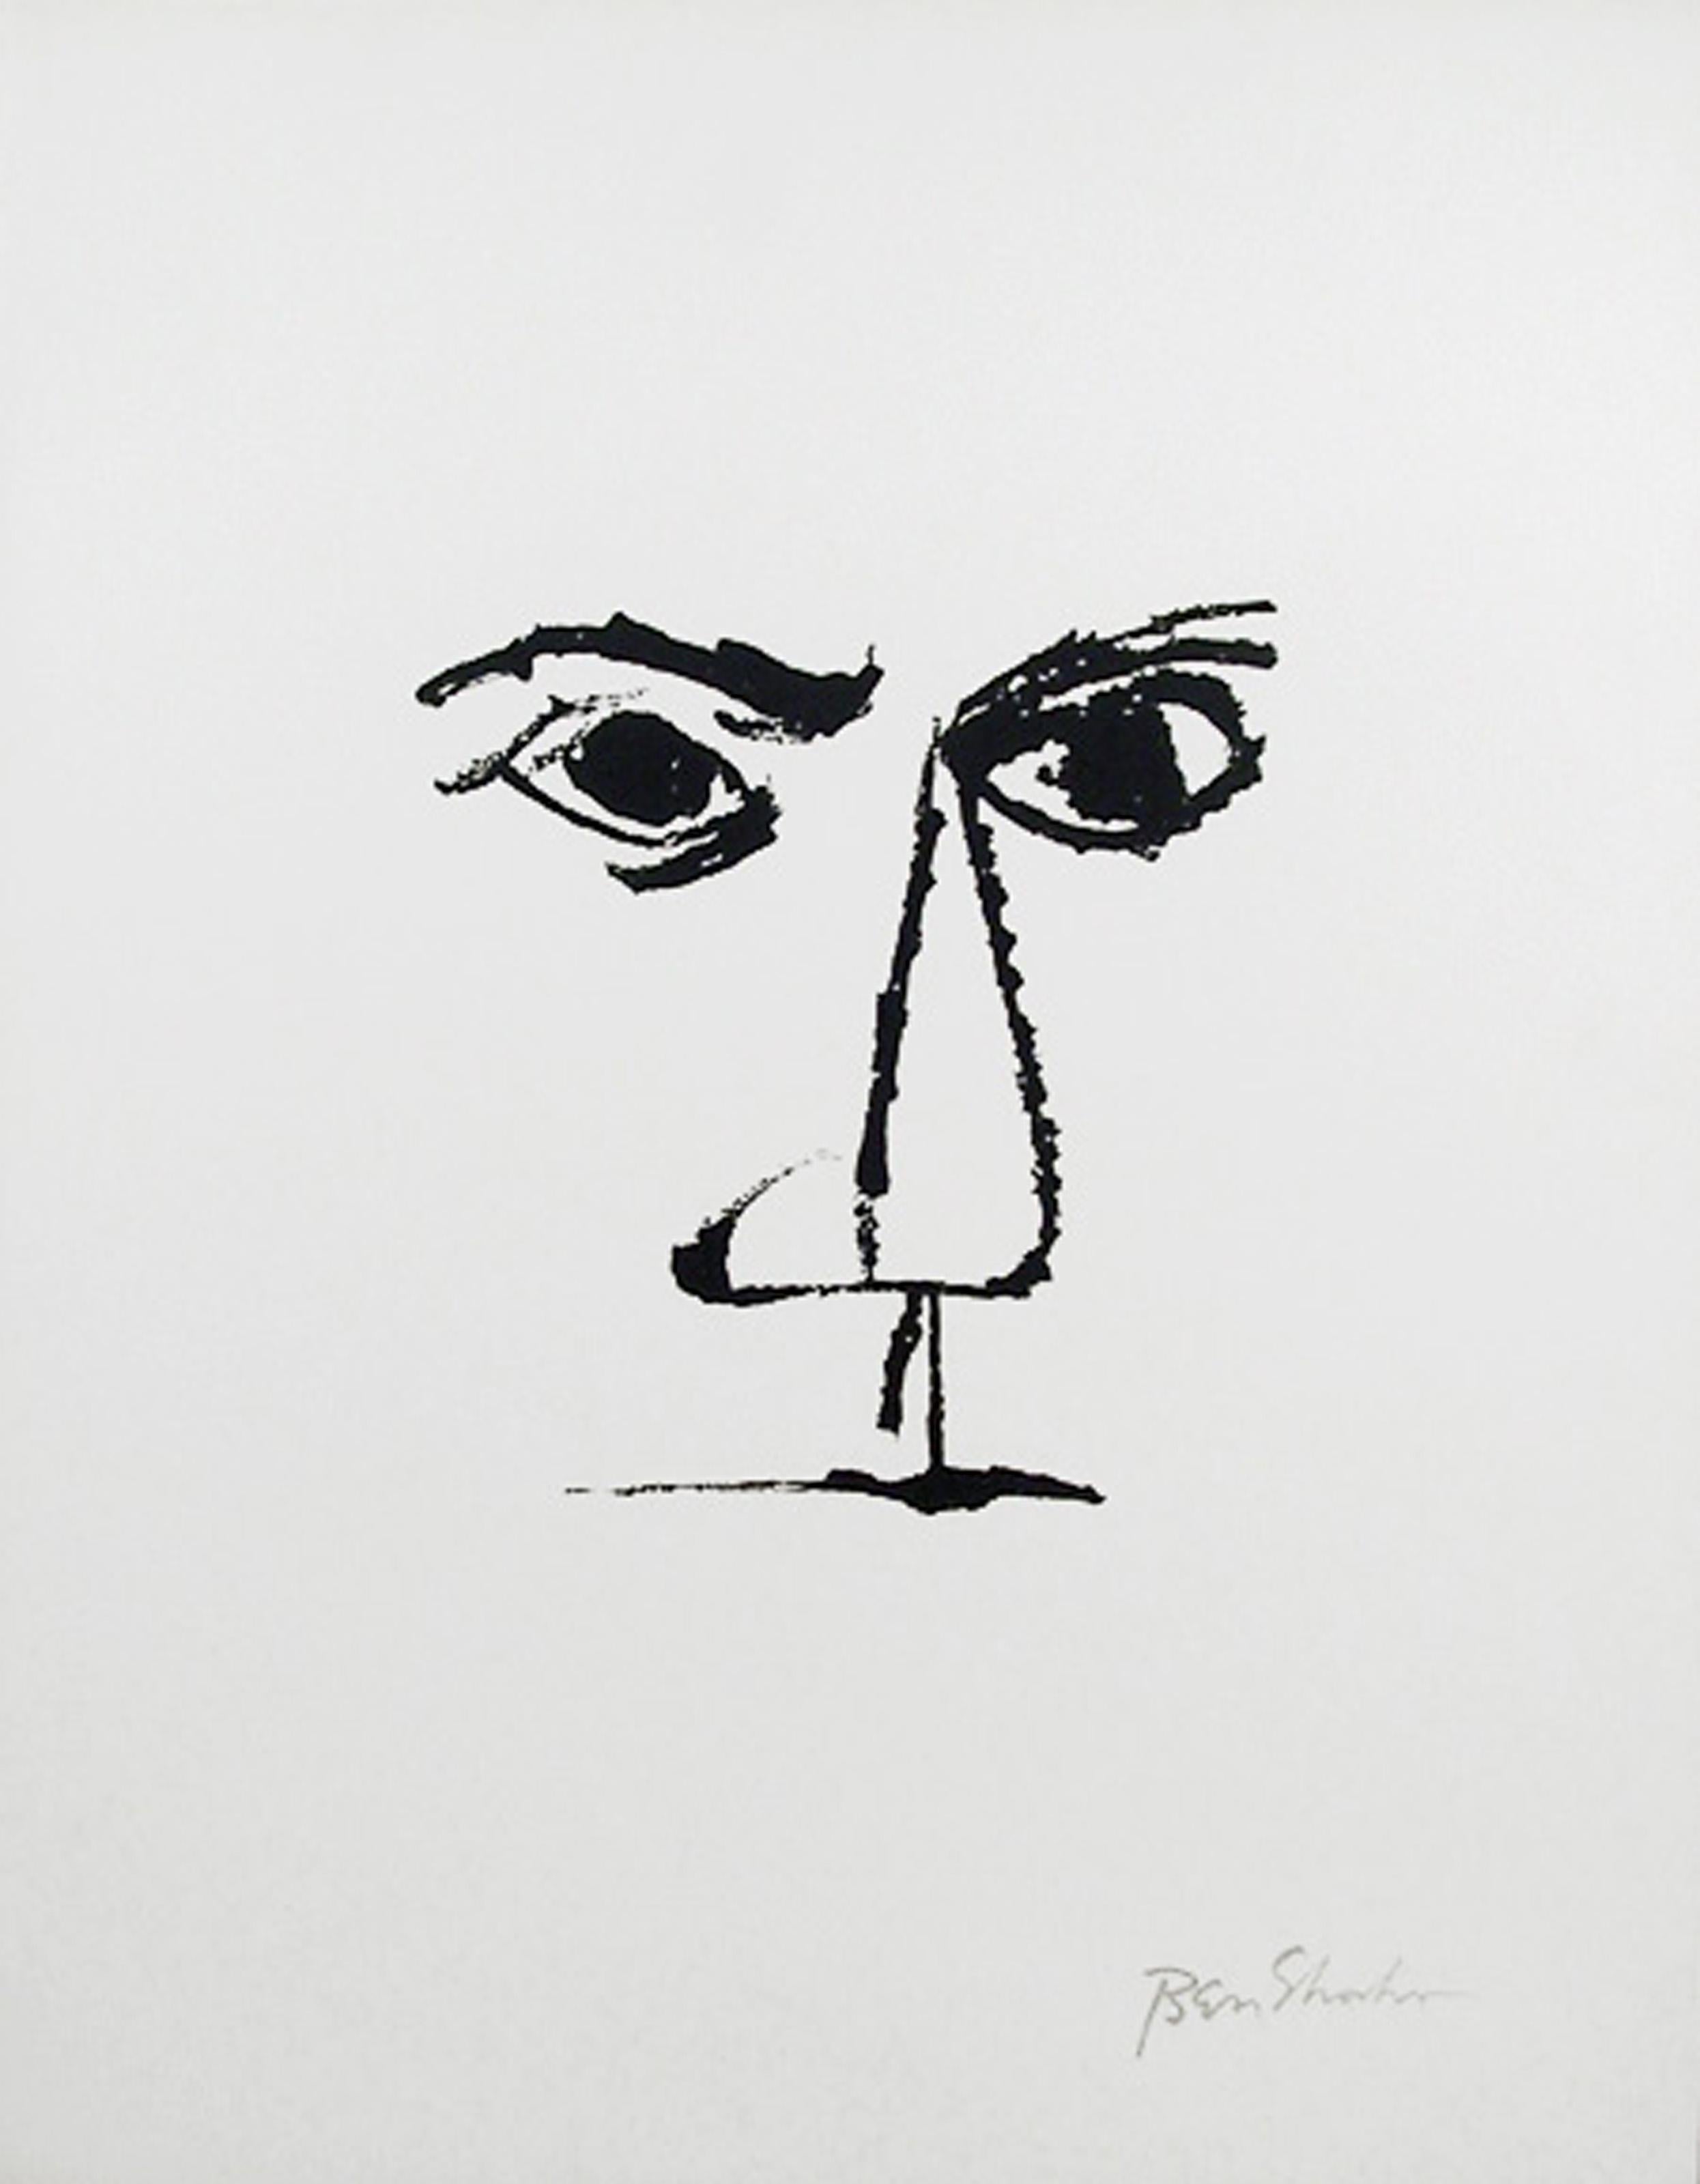 Künstler: Ben Shahn, Amerikaner (1898 - 1969)
Titel: Frontispiz (Porträt) aus der Rilke-Mappe
Jahr: 1968
Medium: Lithographie auf Arches, in der Platte signiert
Auflage: 750
Größe: 22,5 x 17,75 Zoll (57,15 x 45,09 cm)

Druckerei: Atelier Mourlot